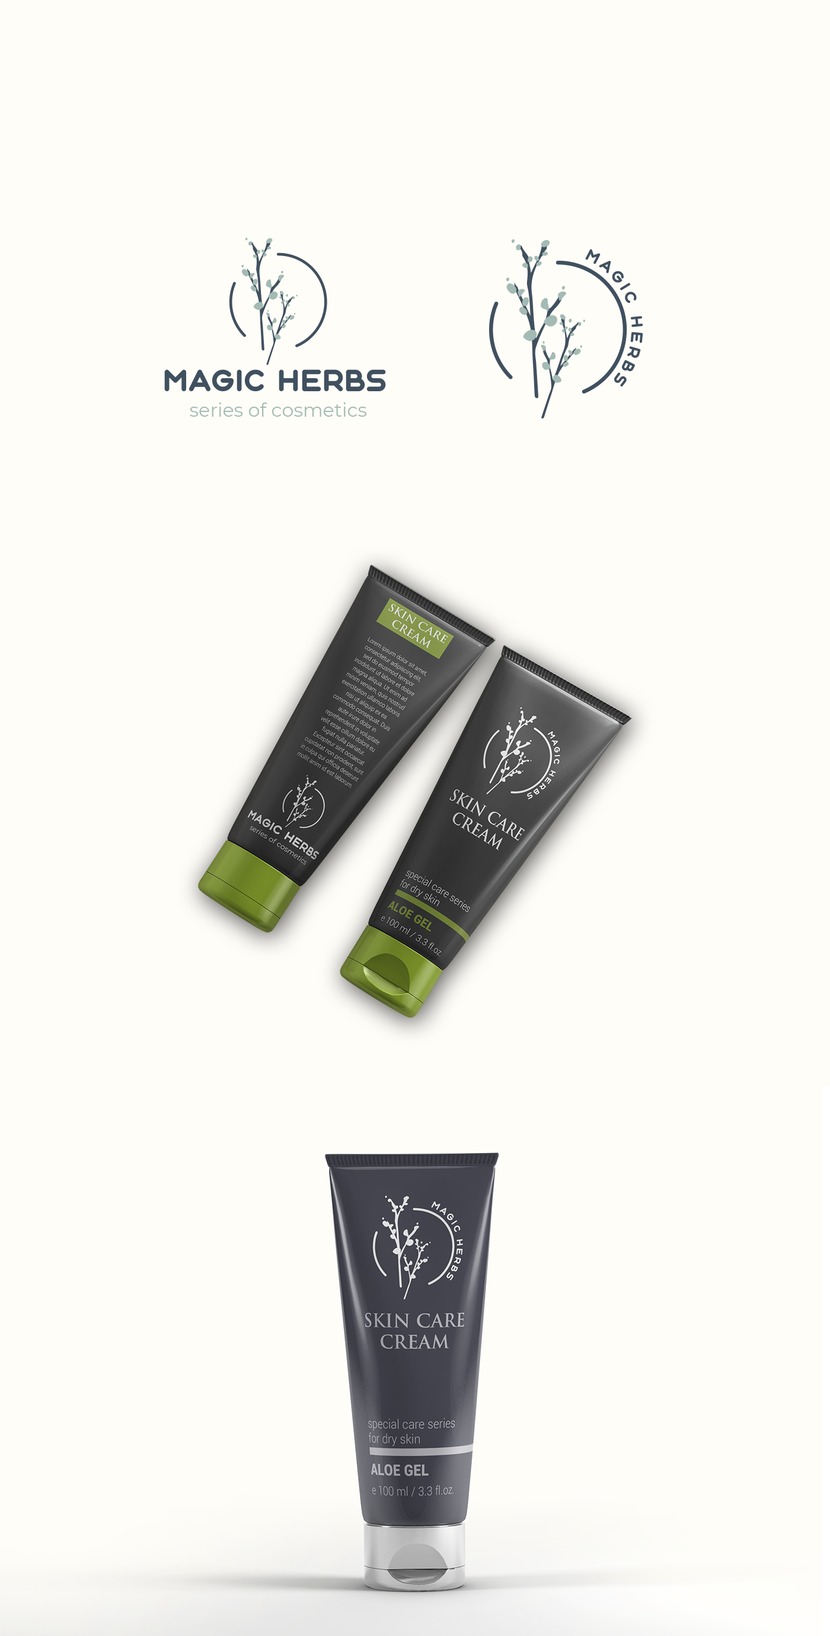 + - Разработка логотипа для косметических продуктов Magic Herbs.